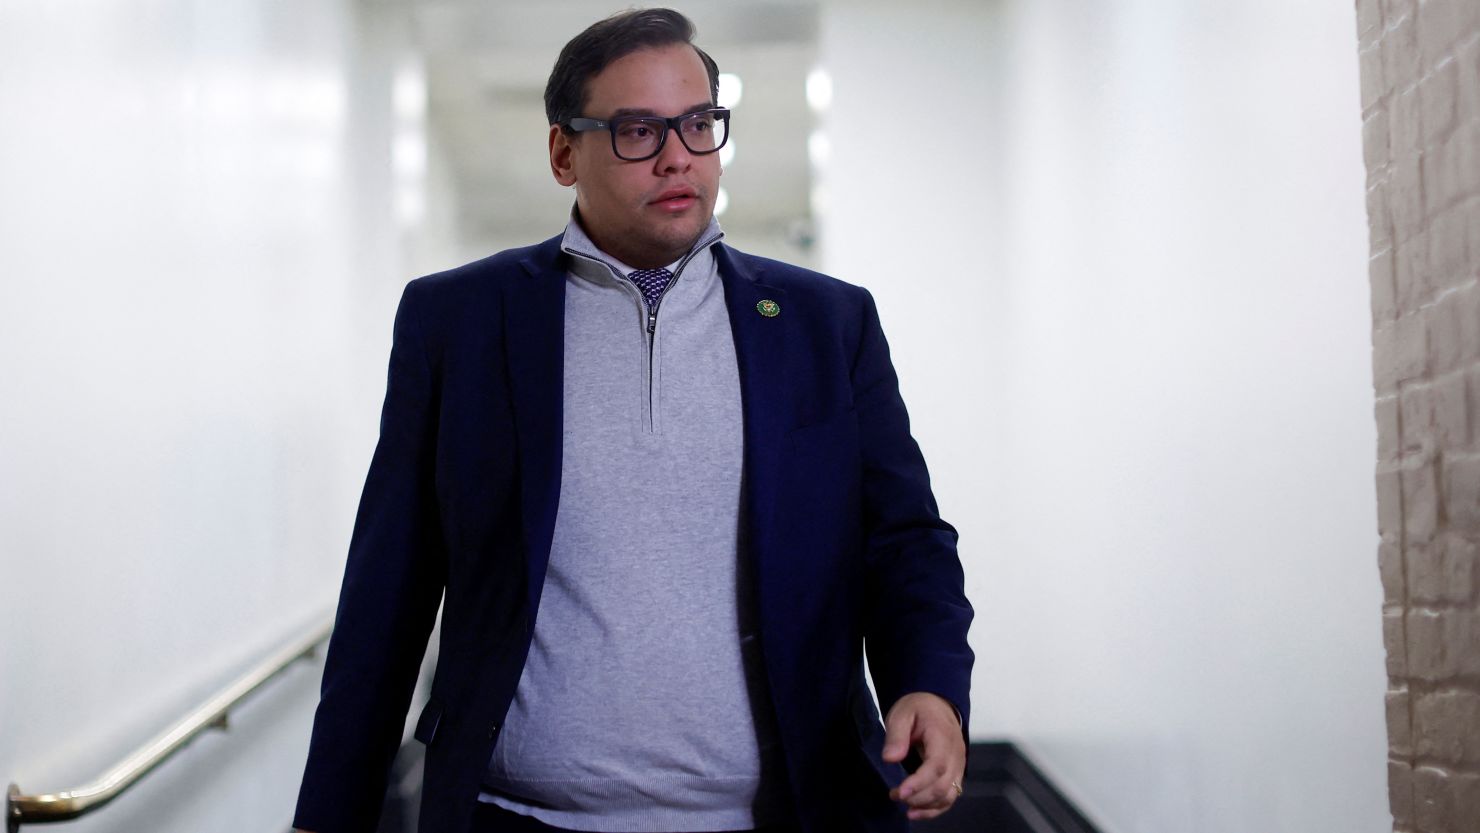 Santos vows to file ethics complaints against multiple lawmakers